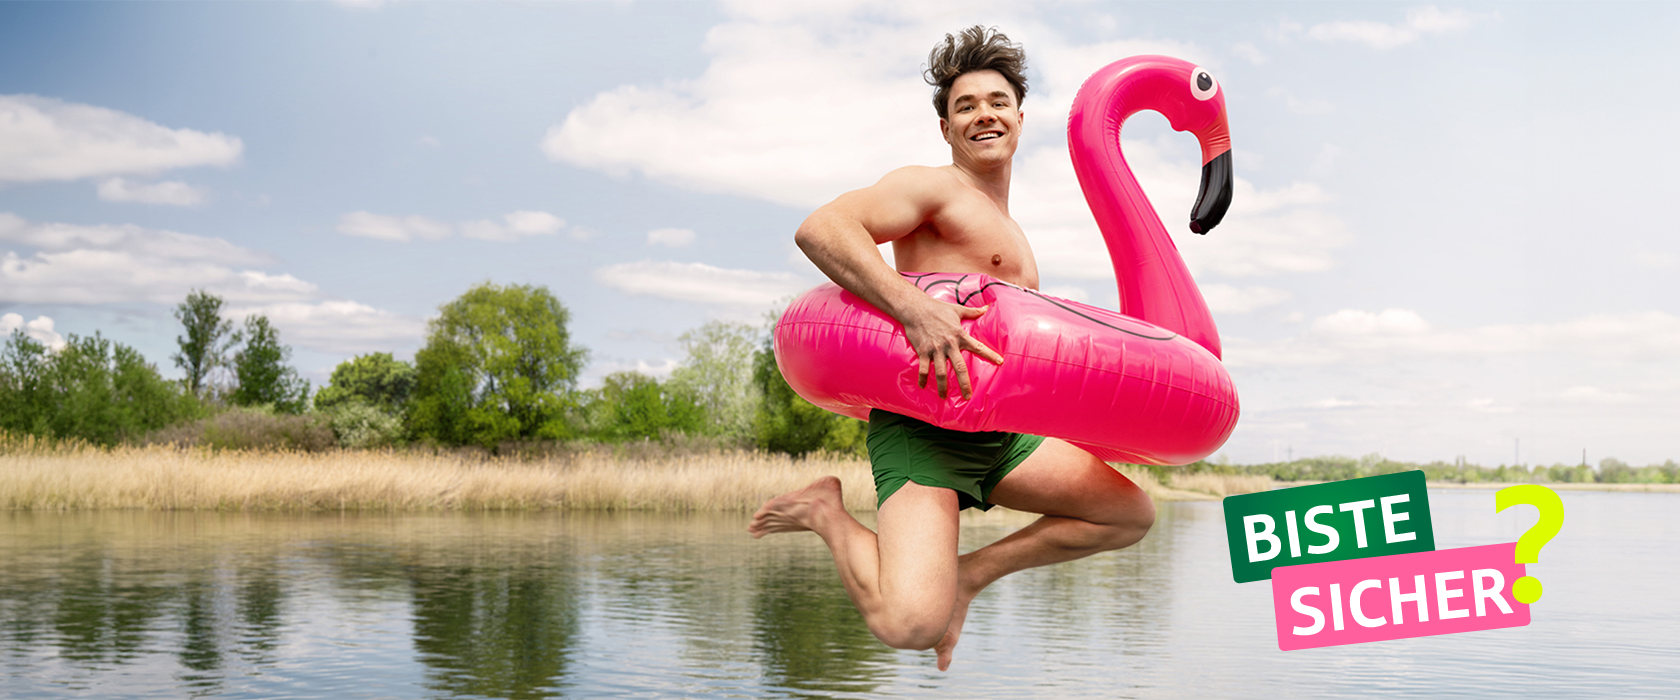 Junger Mann in Badehose springt mit aufblasbarem rosa Flamingo ins Wasser | ÖSA